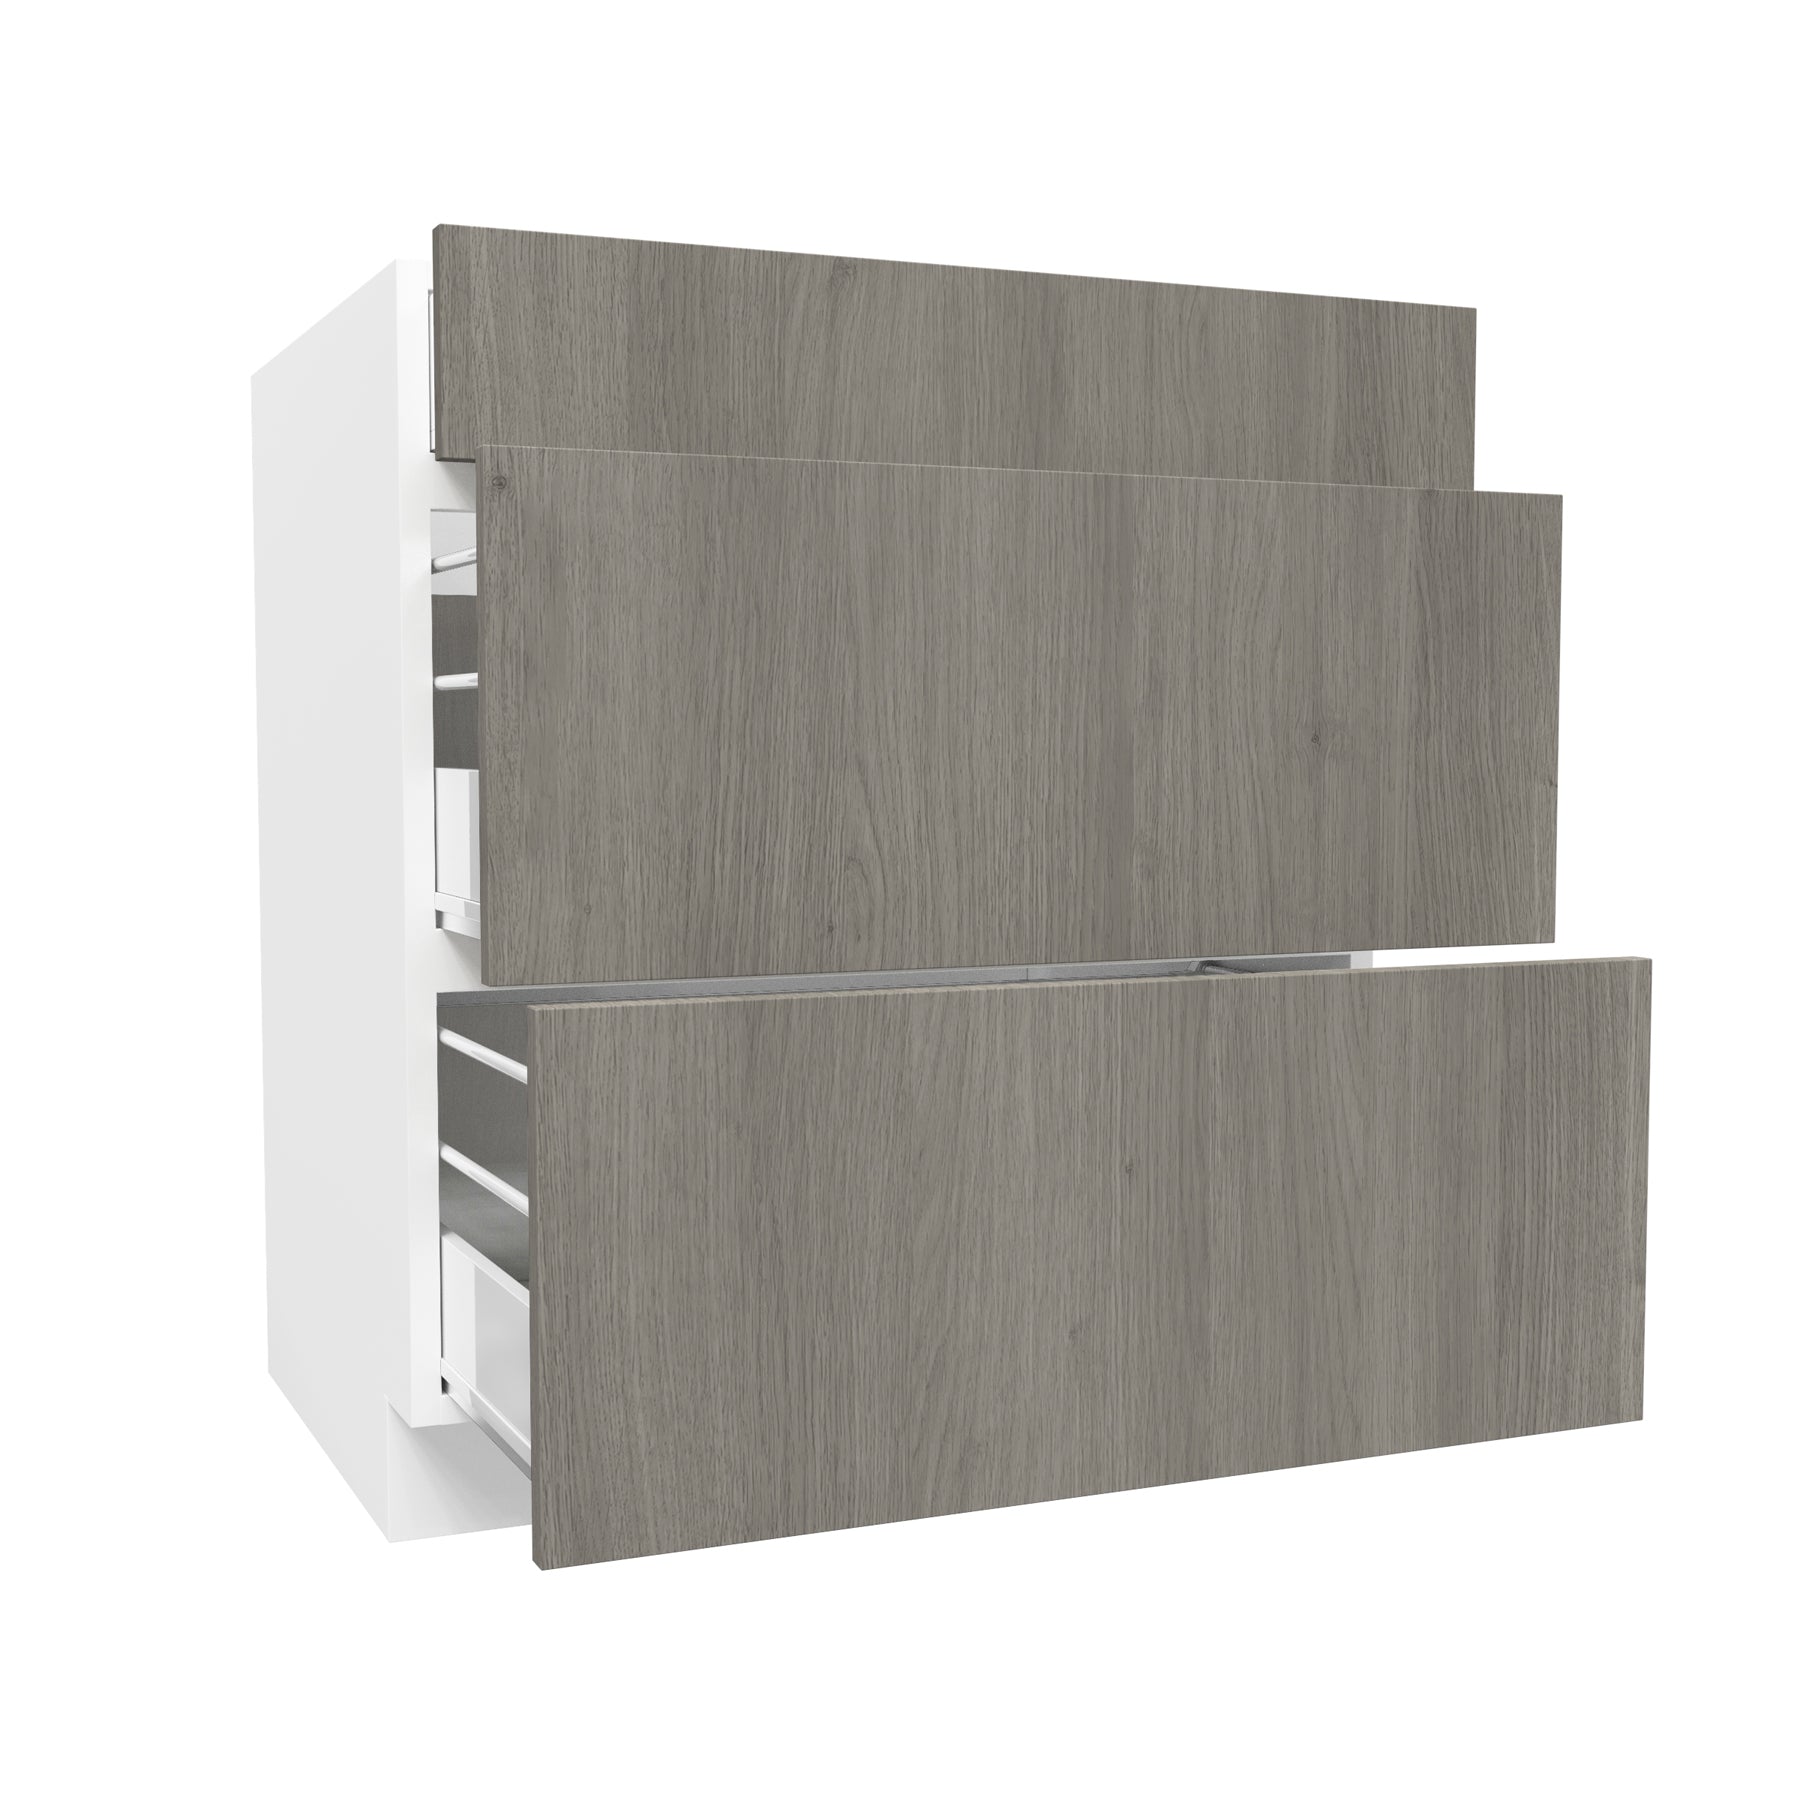 3 Drawer Base Cabinet| Matrix Silver | 30W x 34.5H x 24D